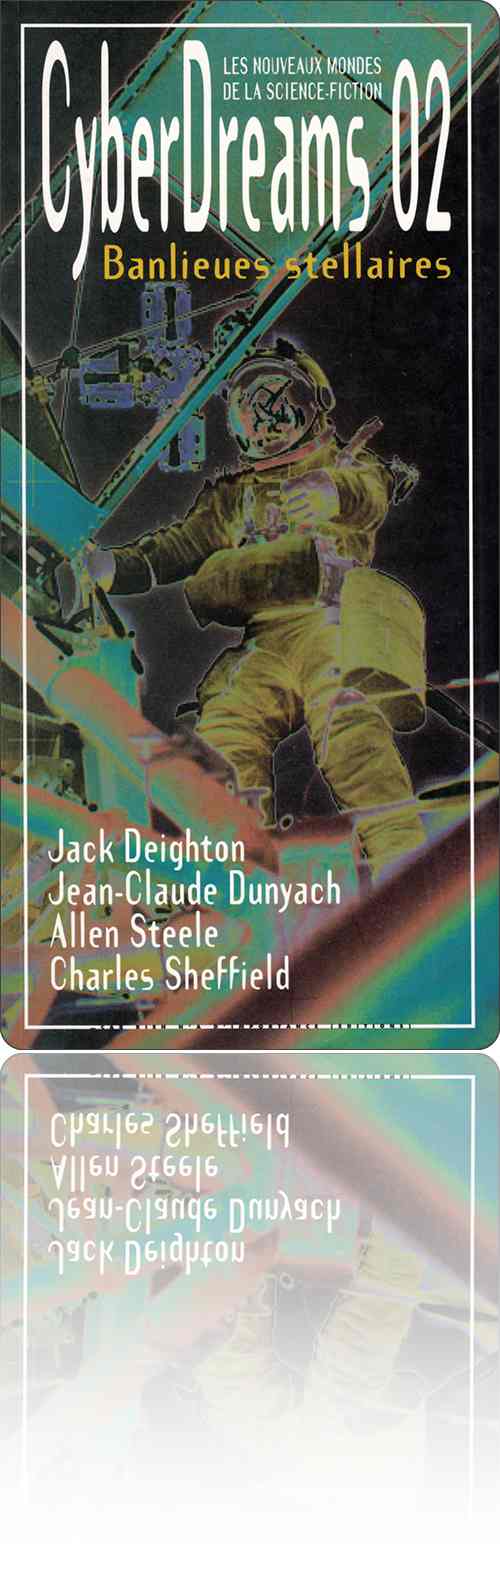 couverture dans les tons de vert et de jaune présentant la photographie solarisée d'un astronaute au travail lors d'une sortie dans l'espace